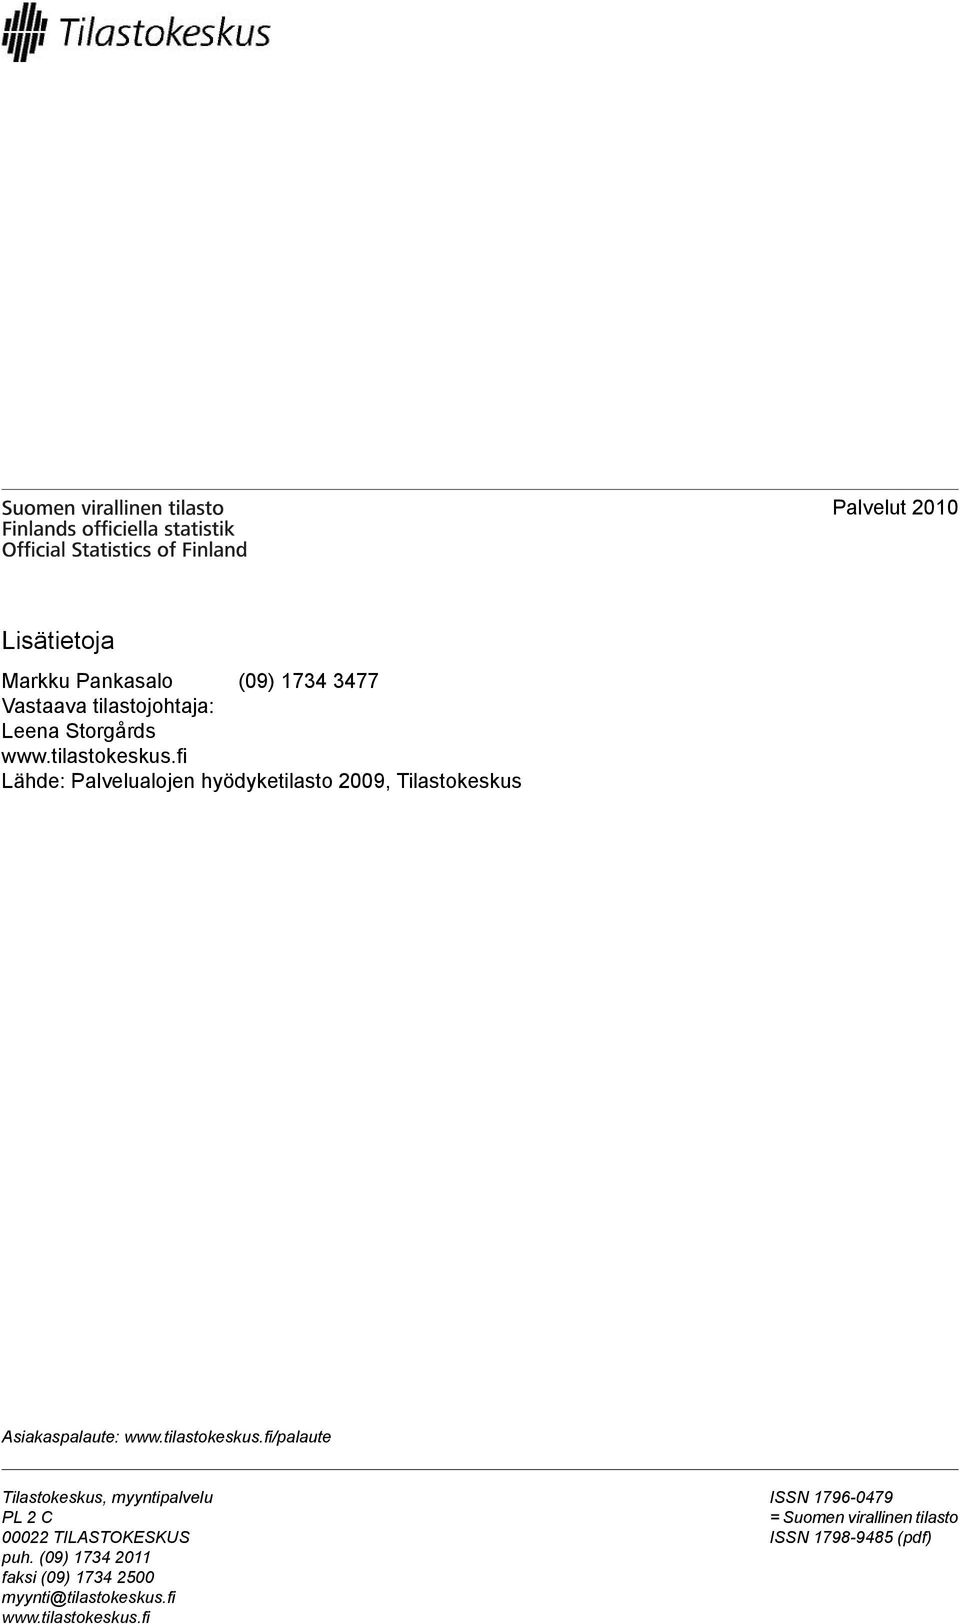 tilastokeskus.fi/palaute Tilastokeskus, myyntipalvelu PL C 000 TILASTOKESKUS puh.